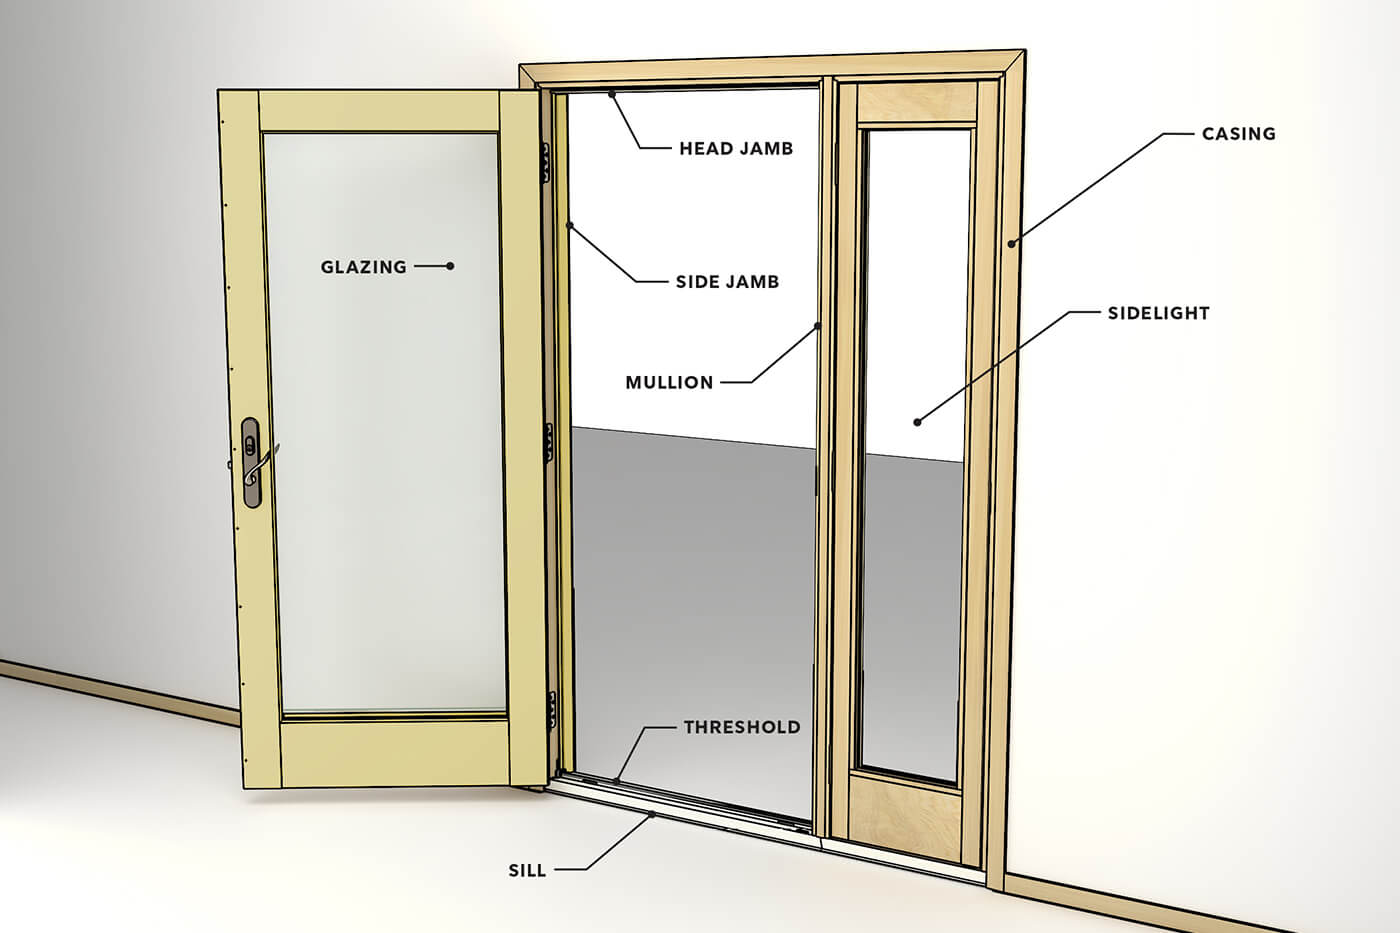 Common Door Terms Diagram